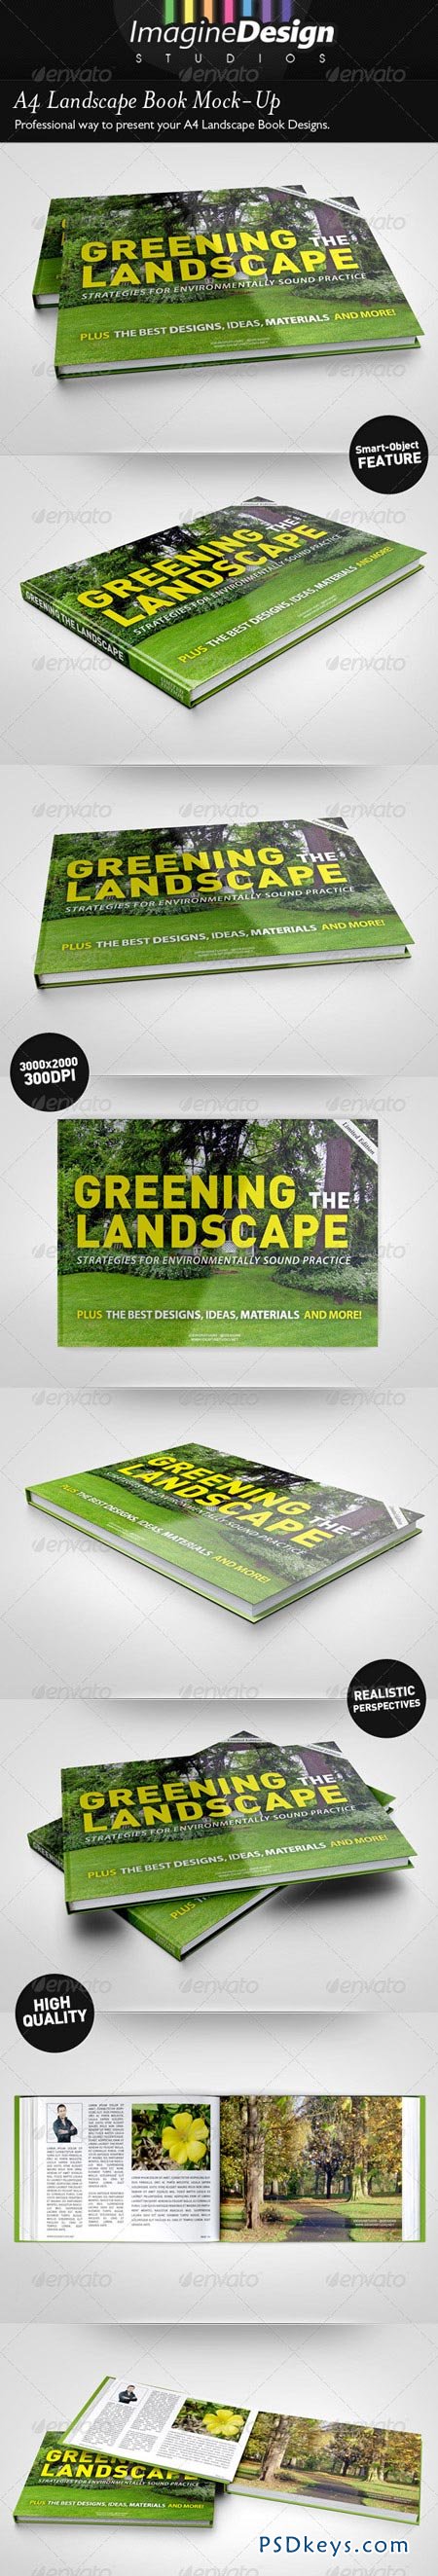 Download A4 Landscape Book Mock-Up 4985374 » Free Download ...